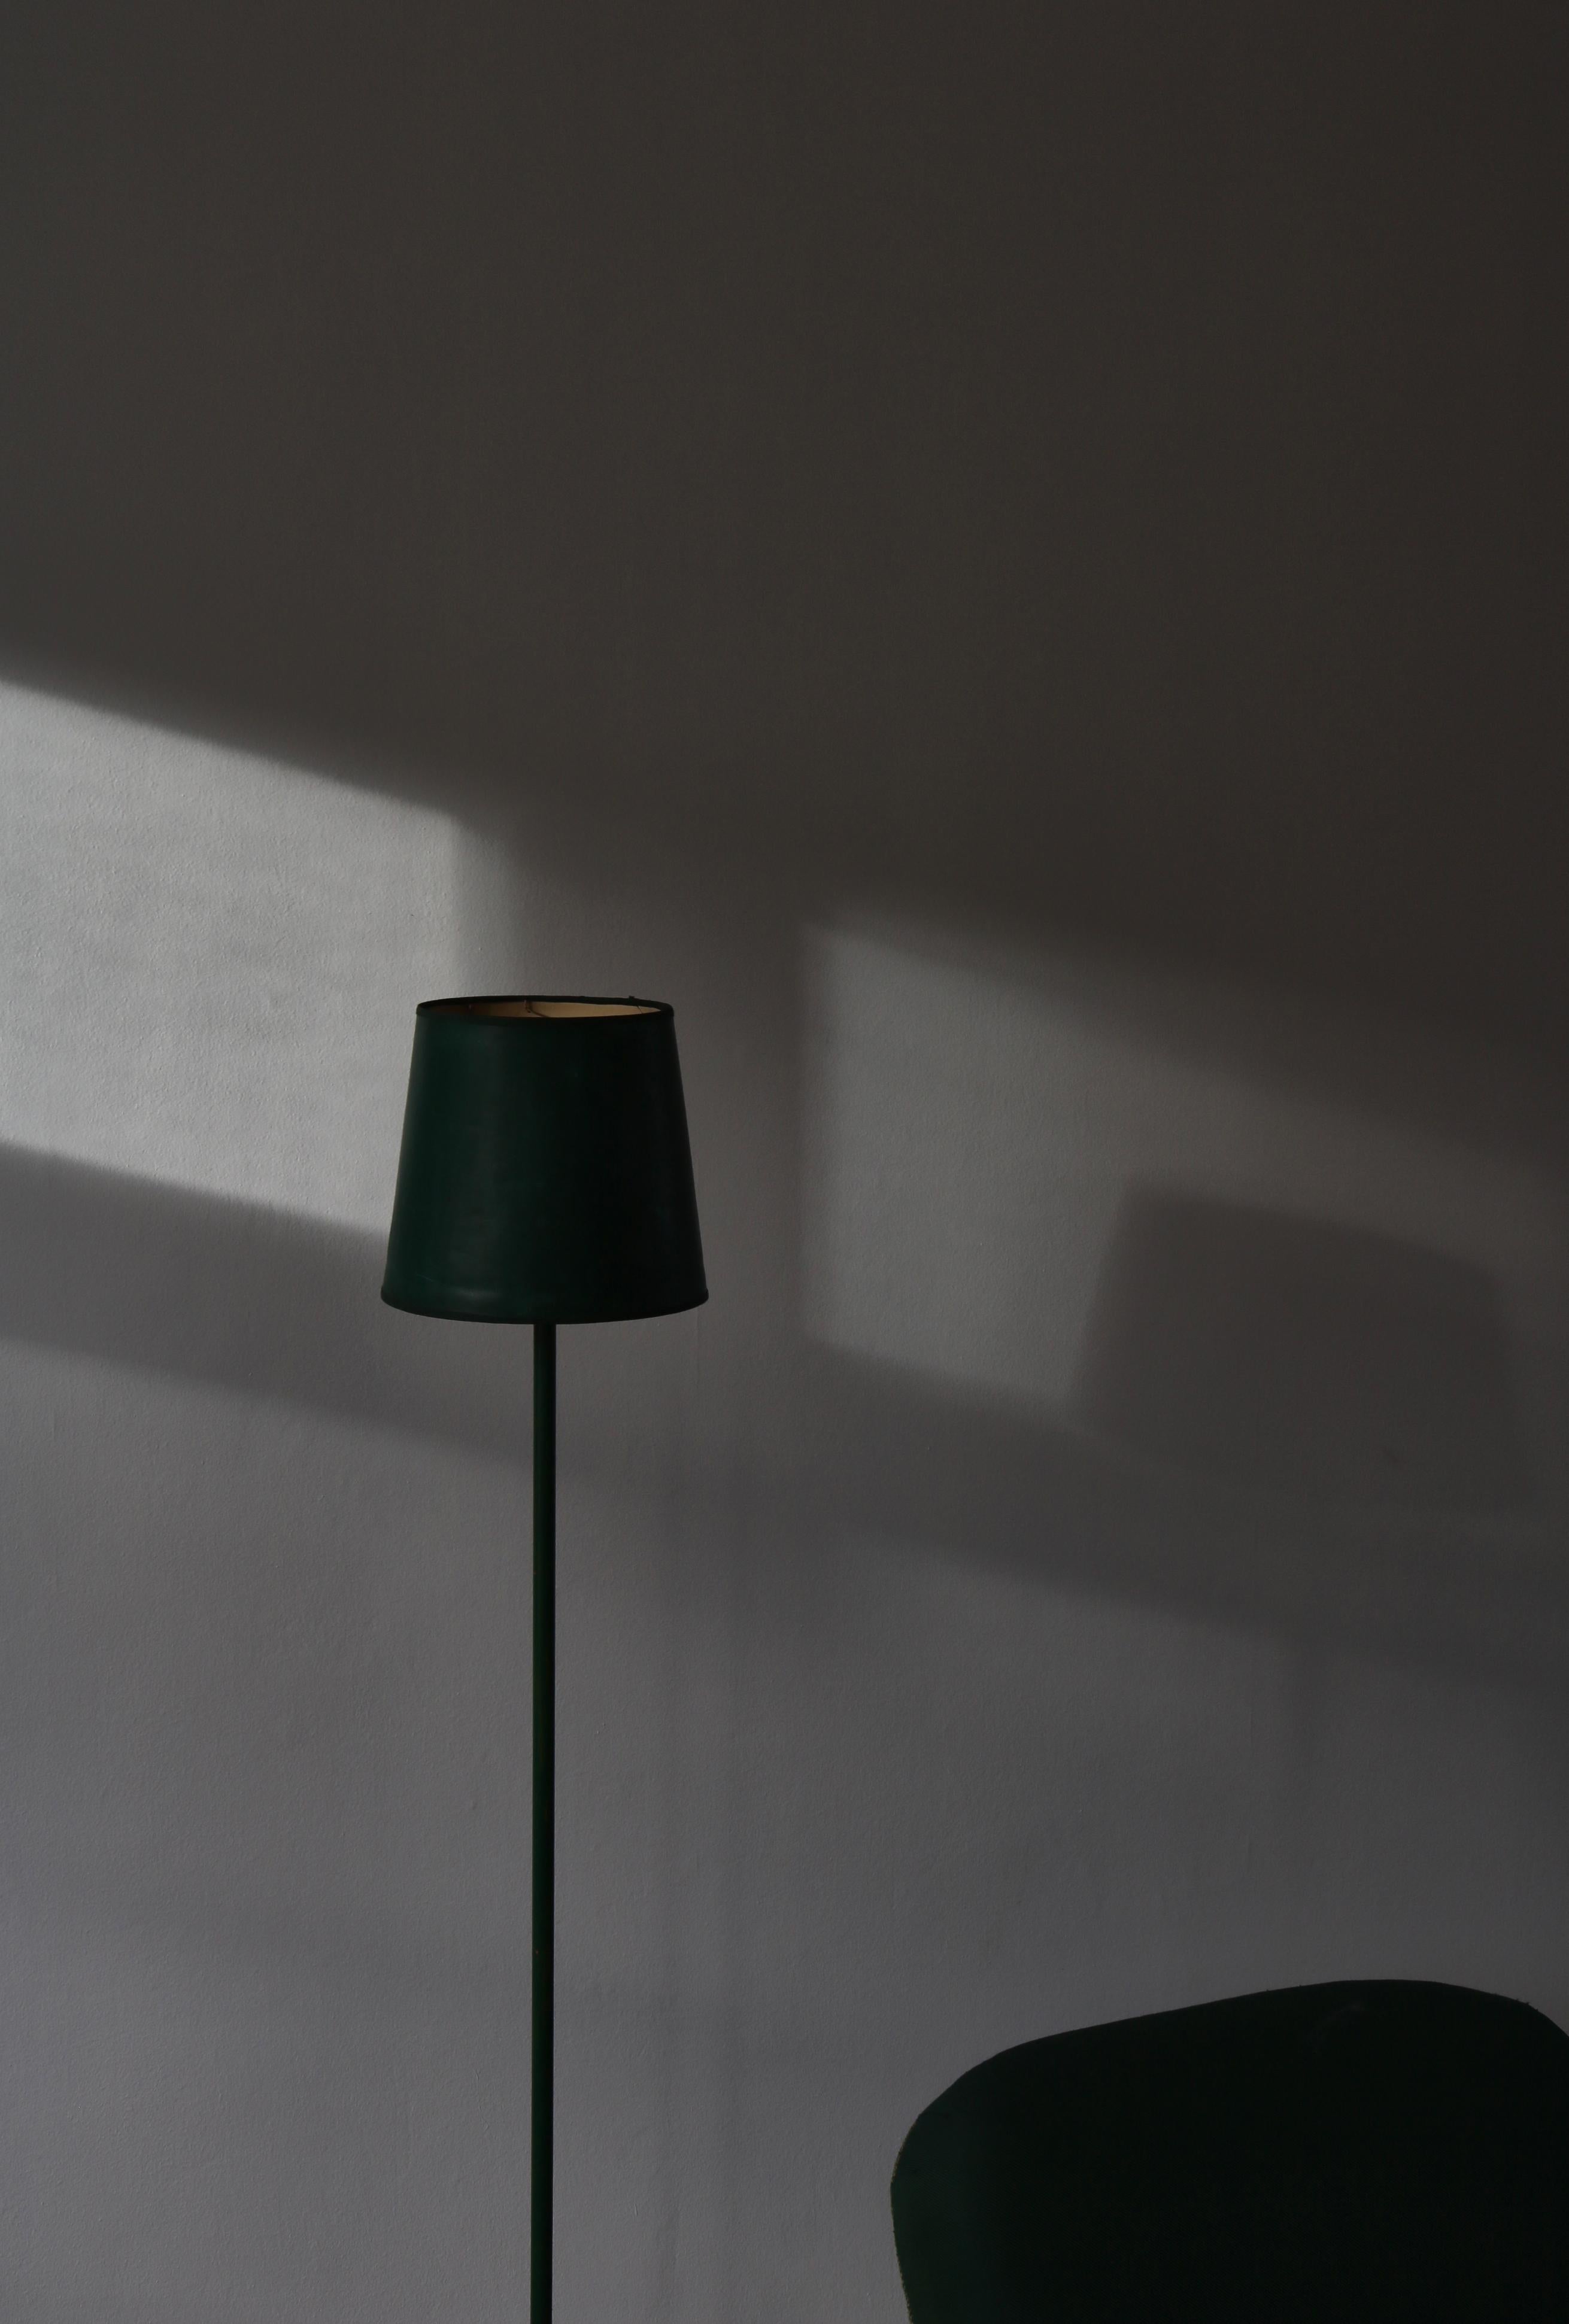 Charmant lampadaire scandinave en métal laqué vert avec détails en laiton fabriqué au Danemark dans les années 1940. Le luminaire a un aspect industriel et est magnifiquement usé. Dans le style de Jean Prouvé.